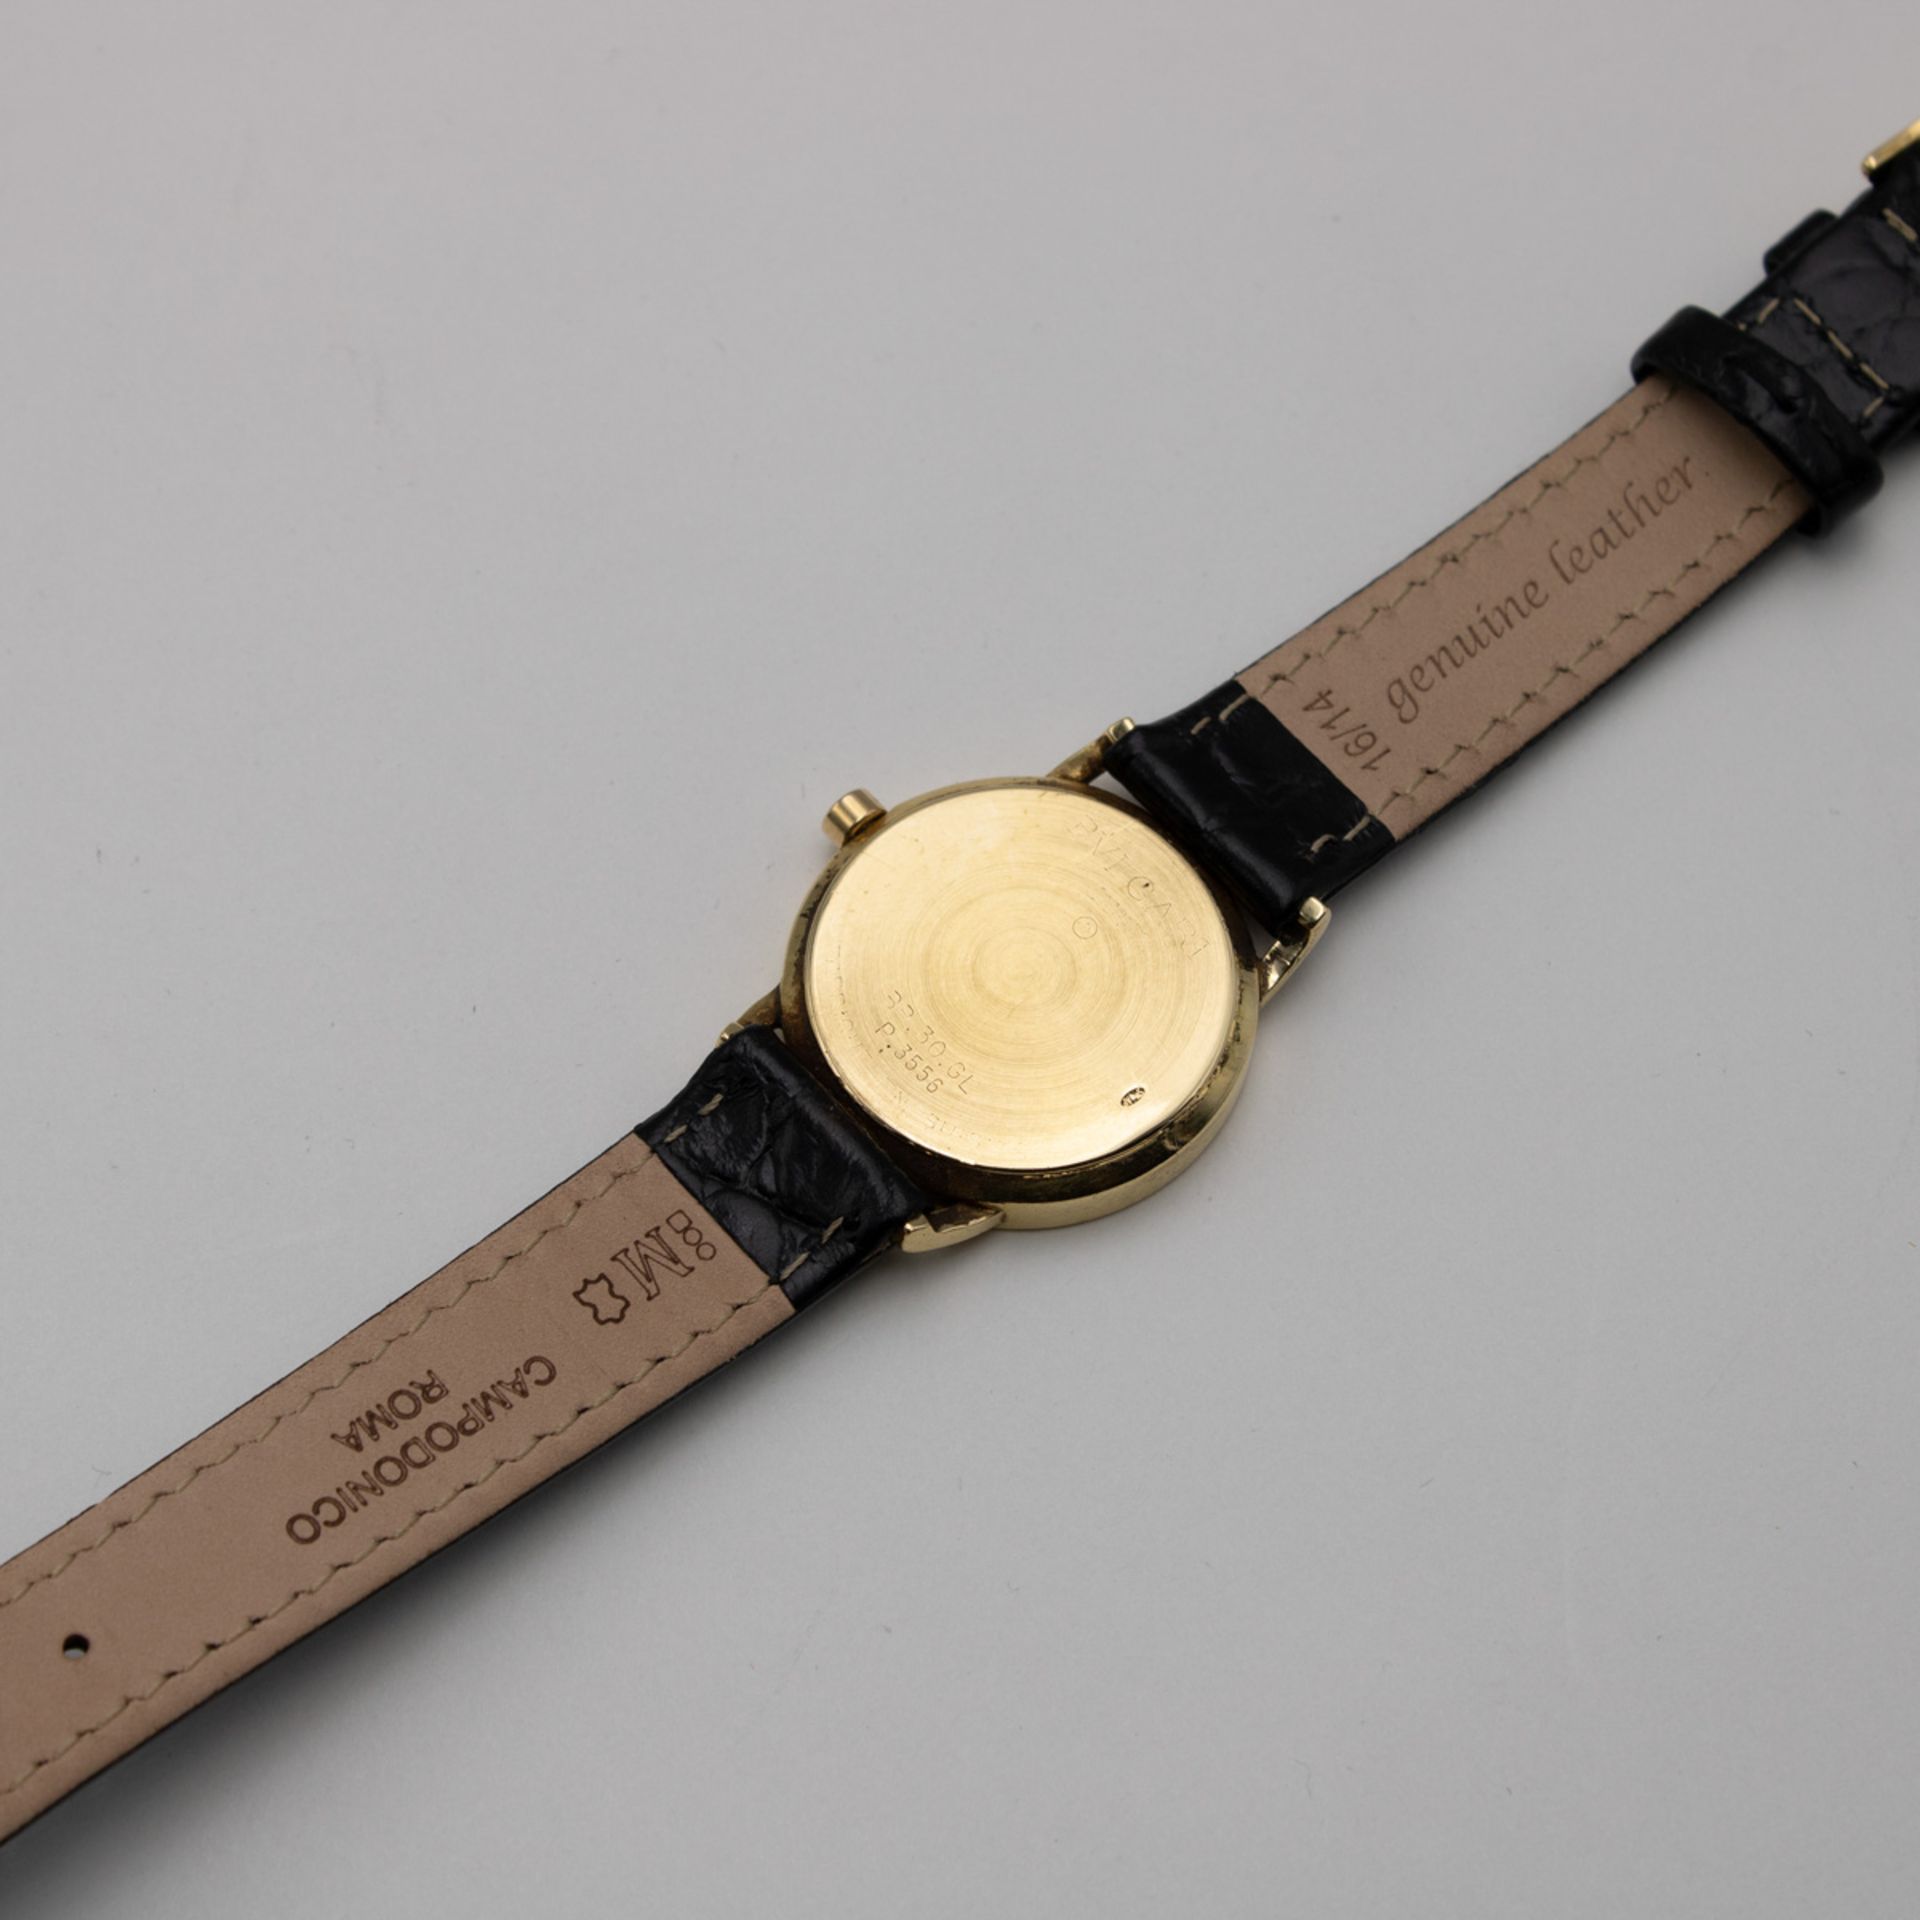 Bulgari vintage wristwatch - Image 3 of 4